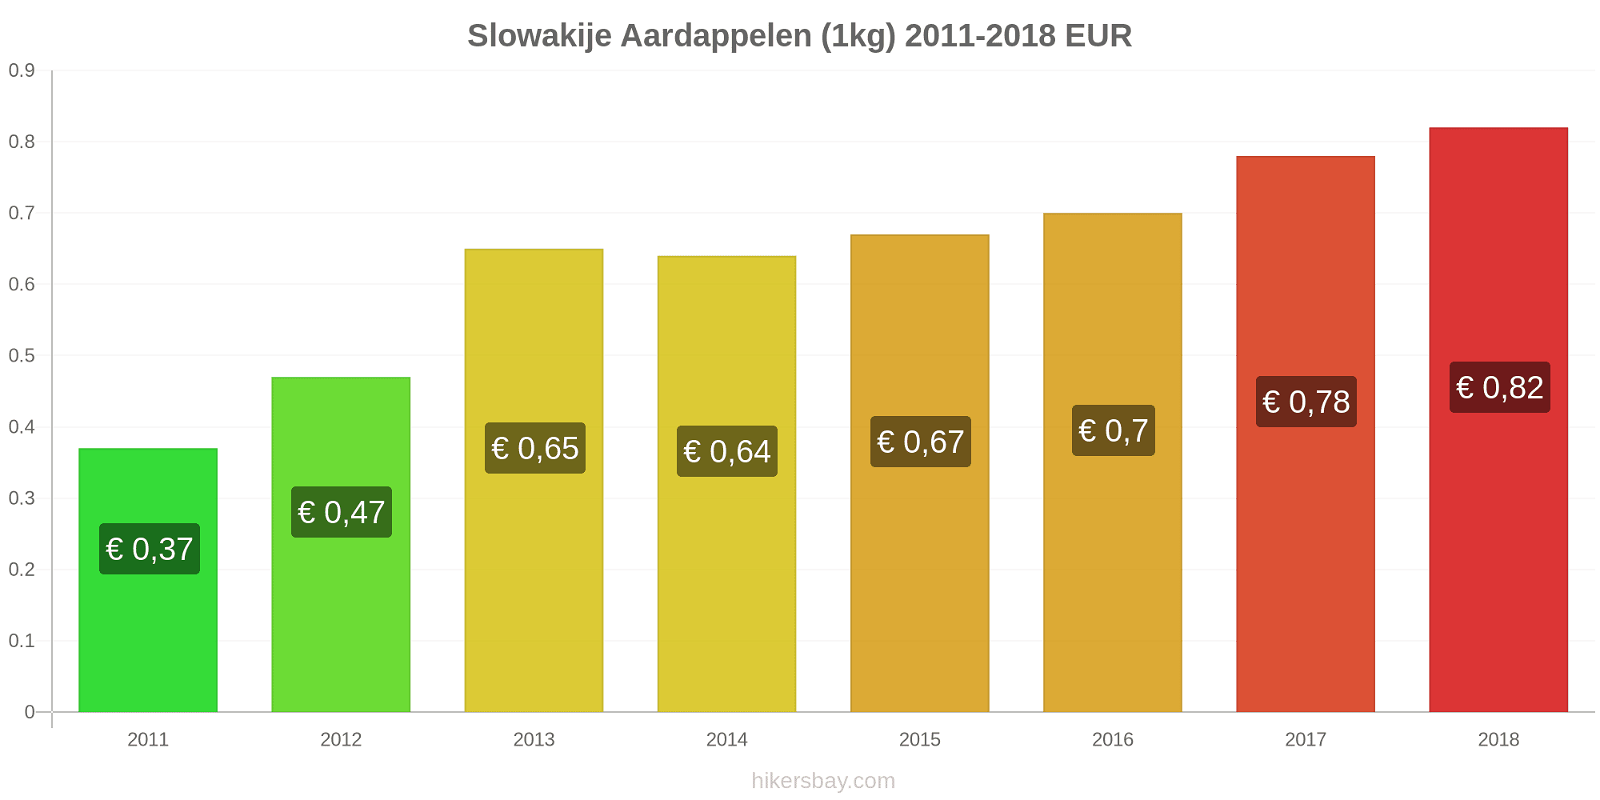 Slowakije prijswijzigingen Aardappelen (1kg) hikersbay.com